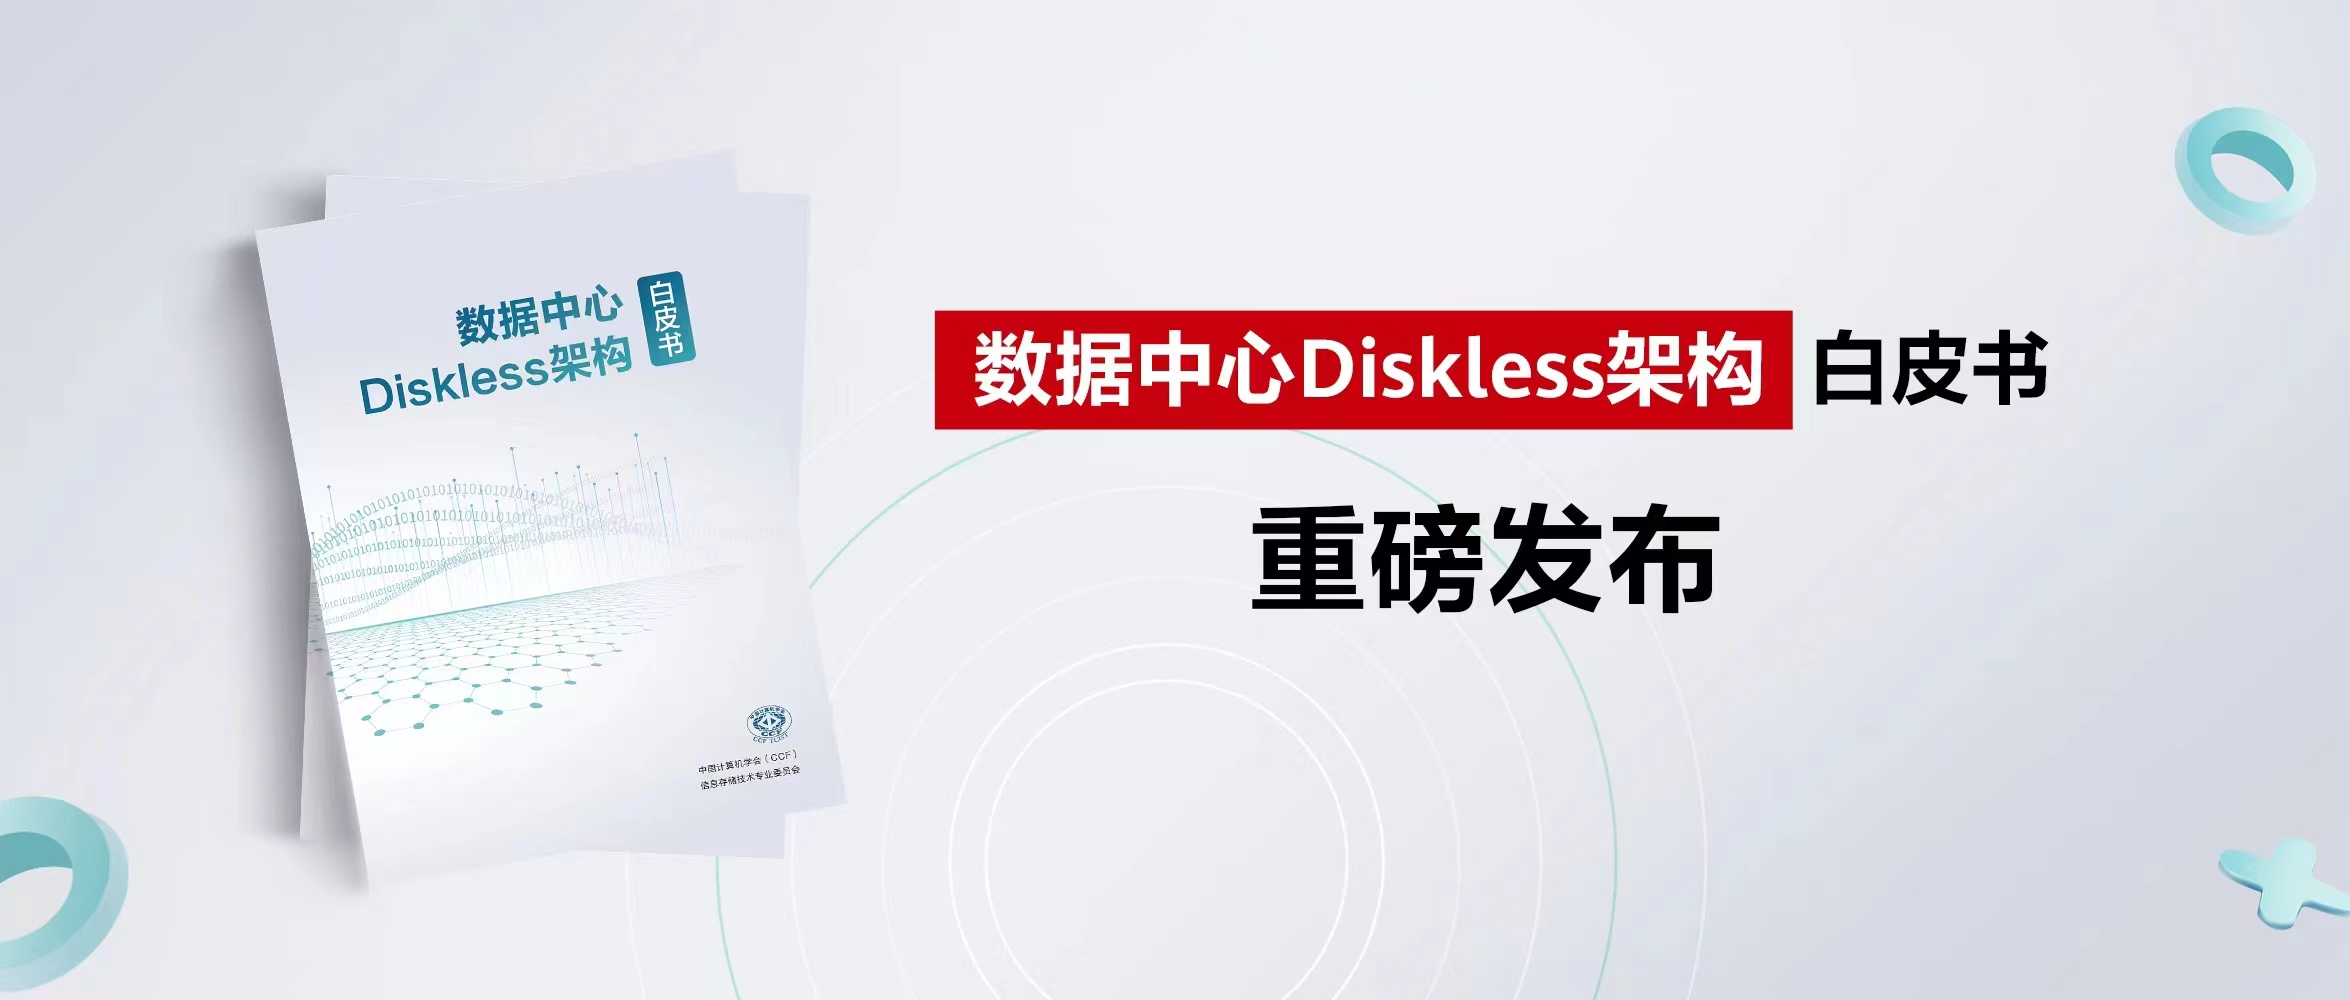 CCF发布《数据中心Diskless架构》白皮书，催生数据中心变革新机遇